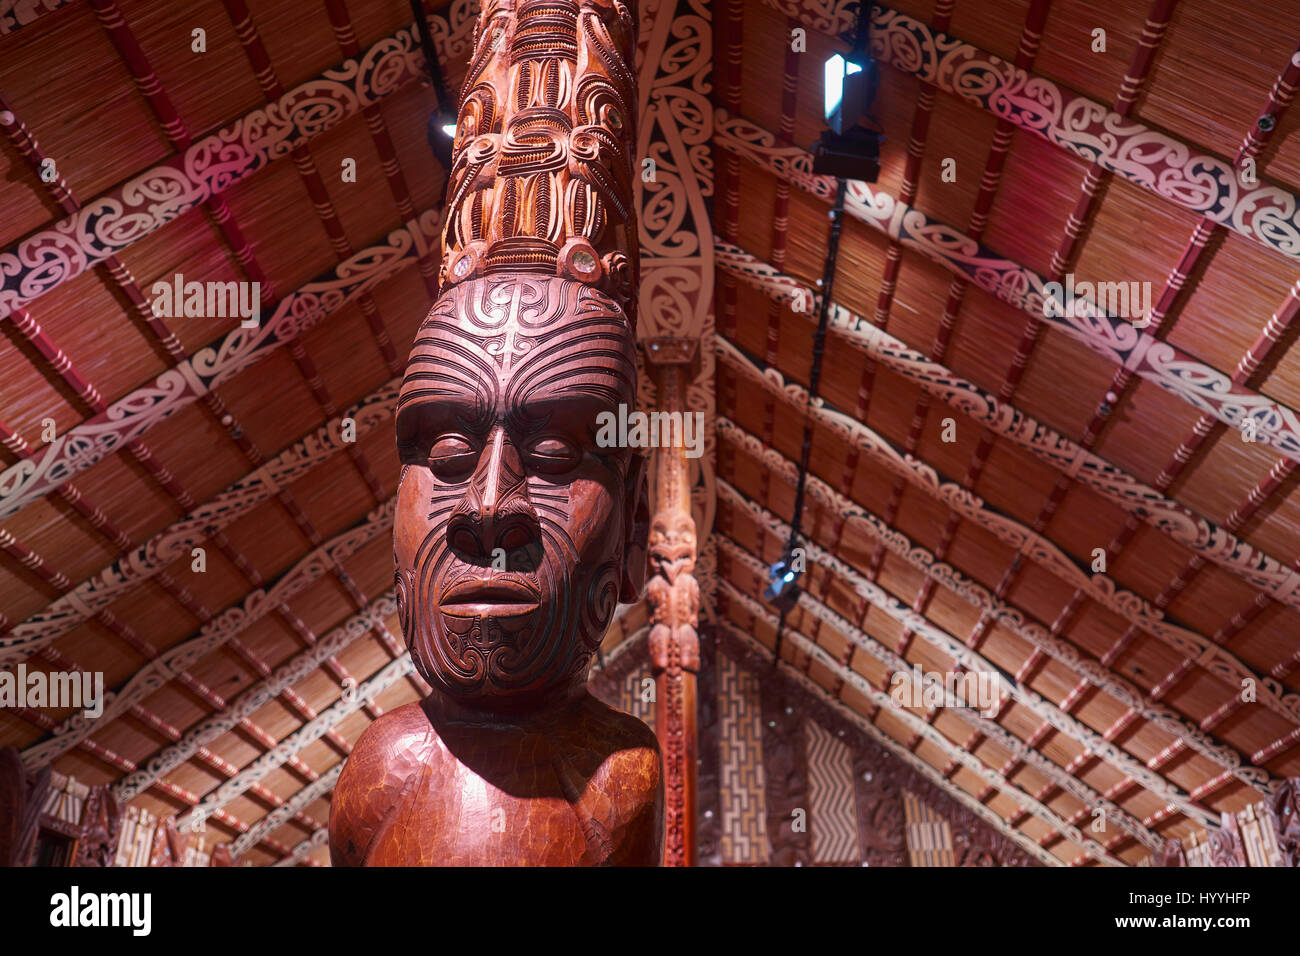 Maori Carving eines Häuptlings in einem Marae Gemeindehaus - Waitangi, Northland, Neuseeland Stockfoto